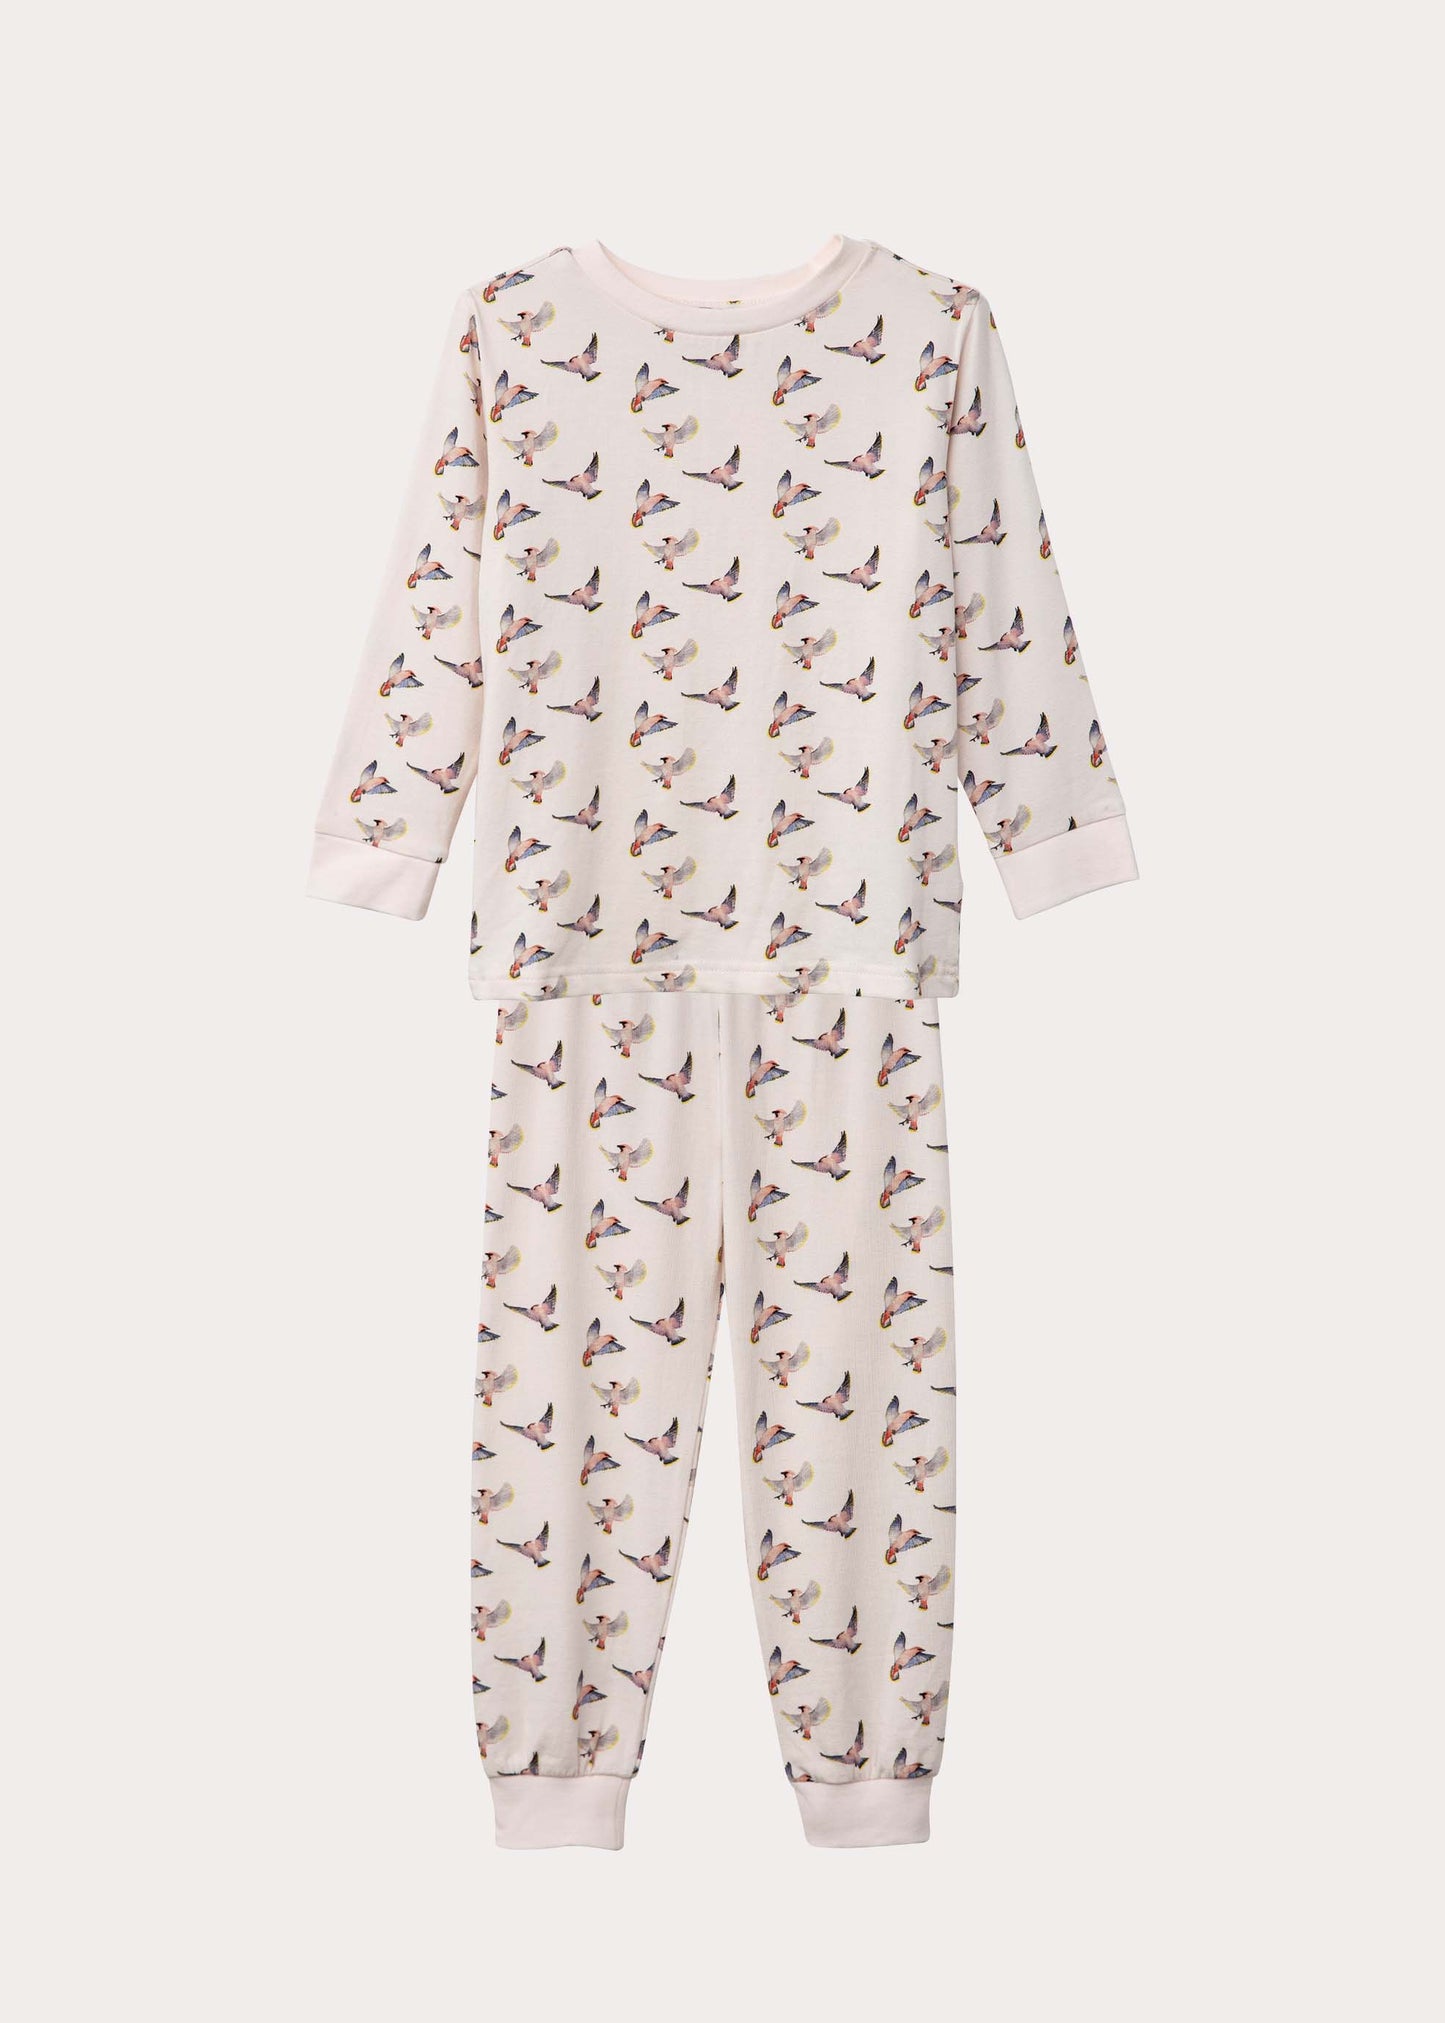 The pajama mass with birds